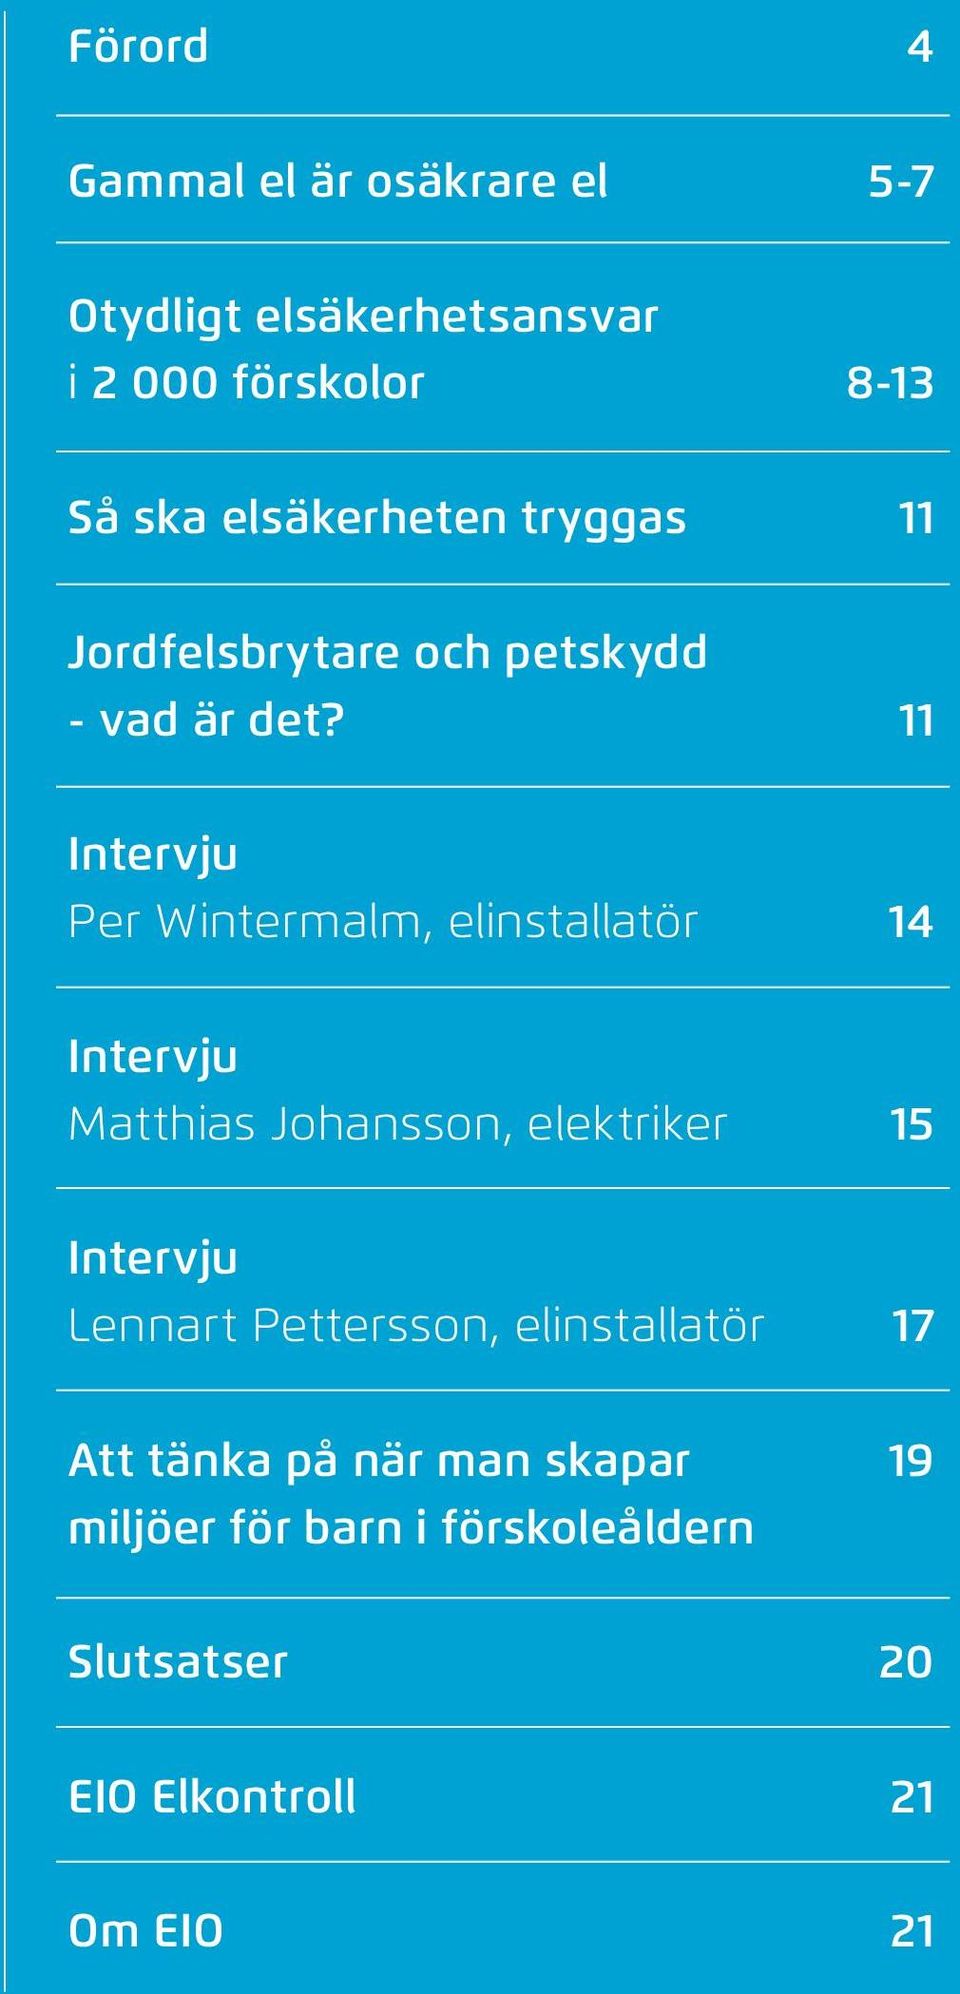 11 Intervju Per Wintermalm, elinstallatör 14 Intervju Matthias Johansson, elektriker 15 Intervju Lennart